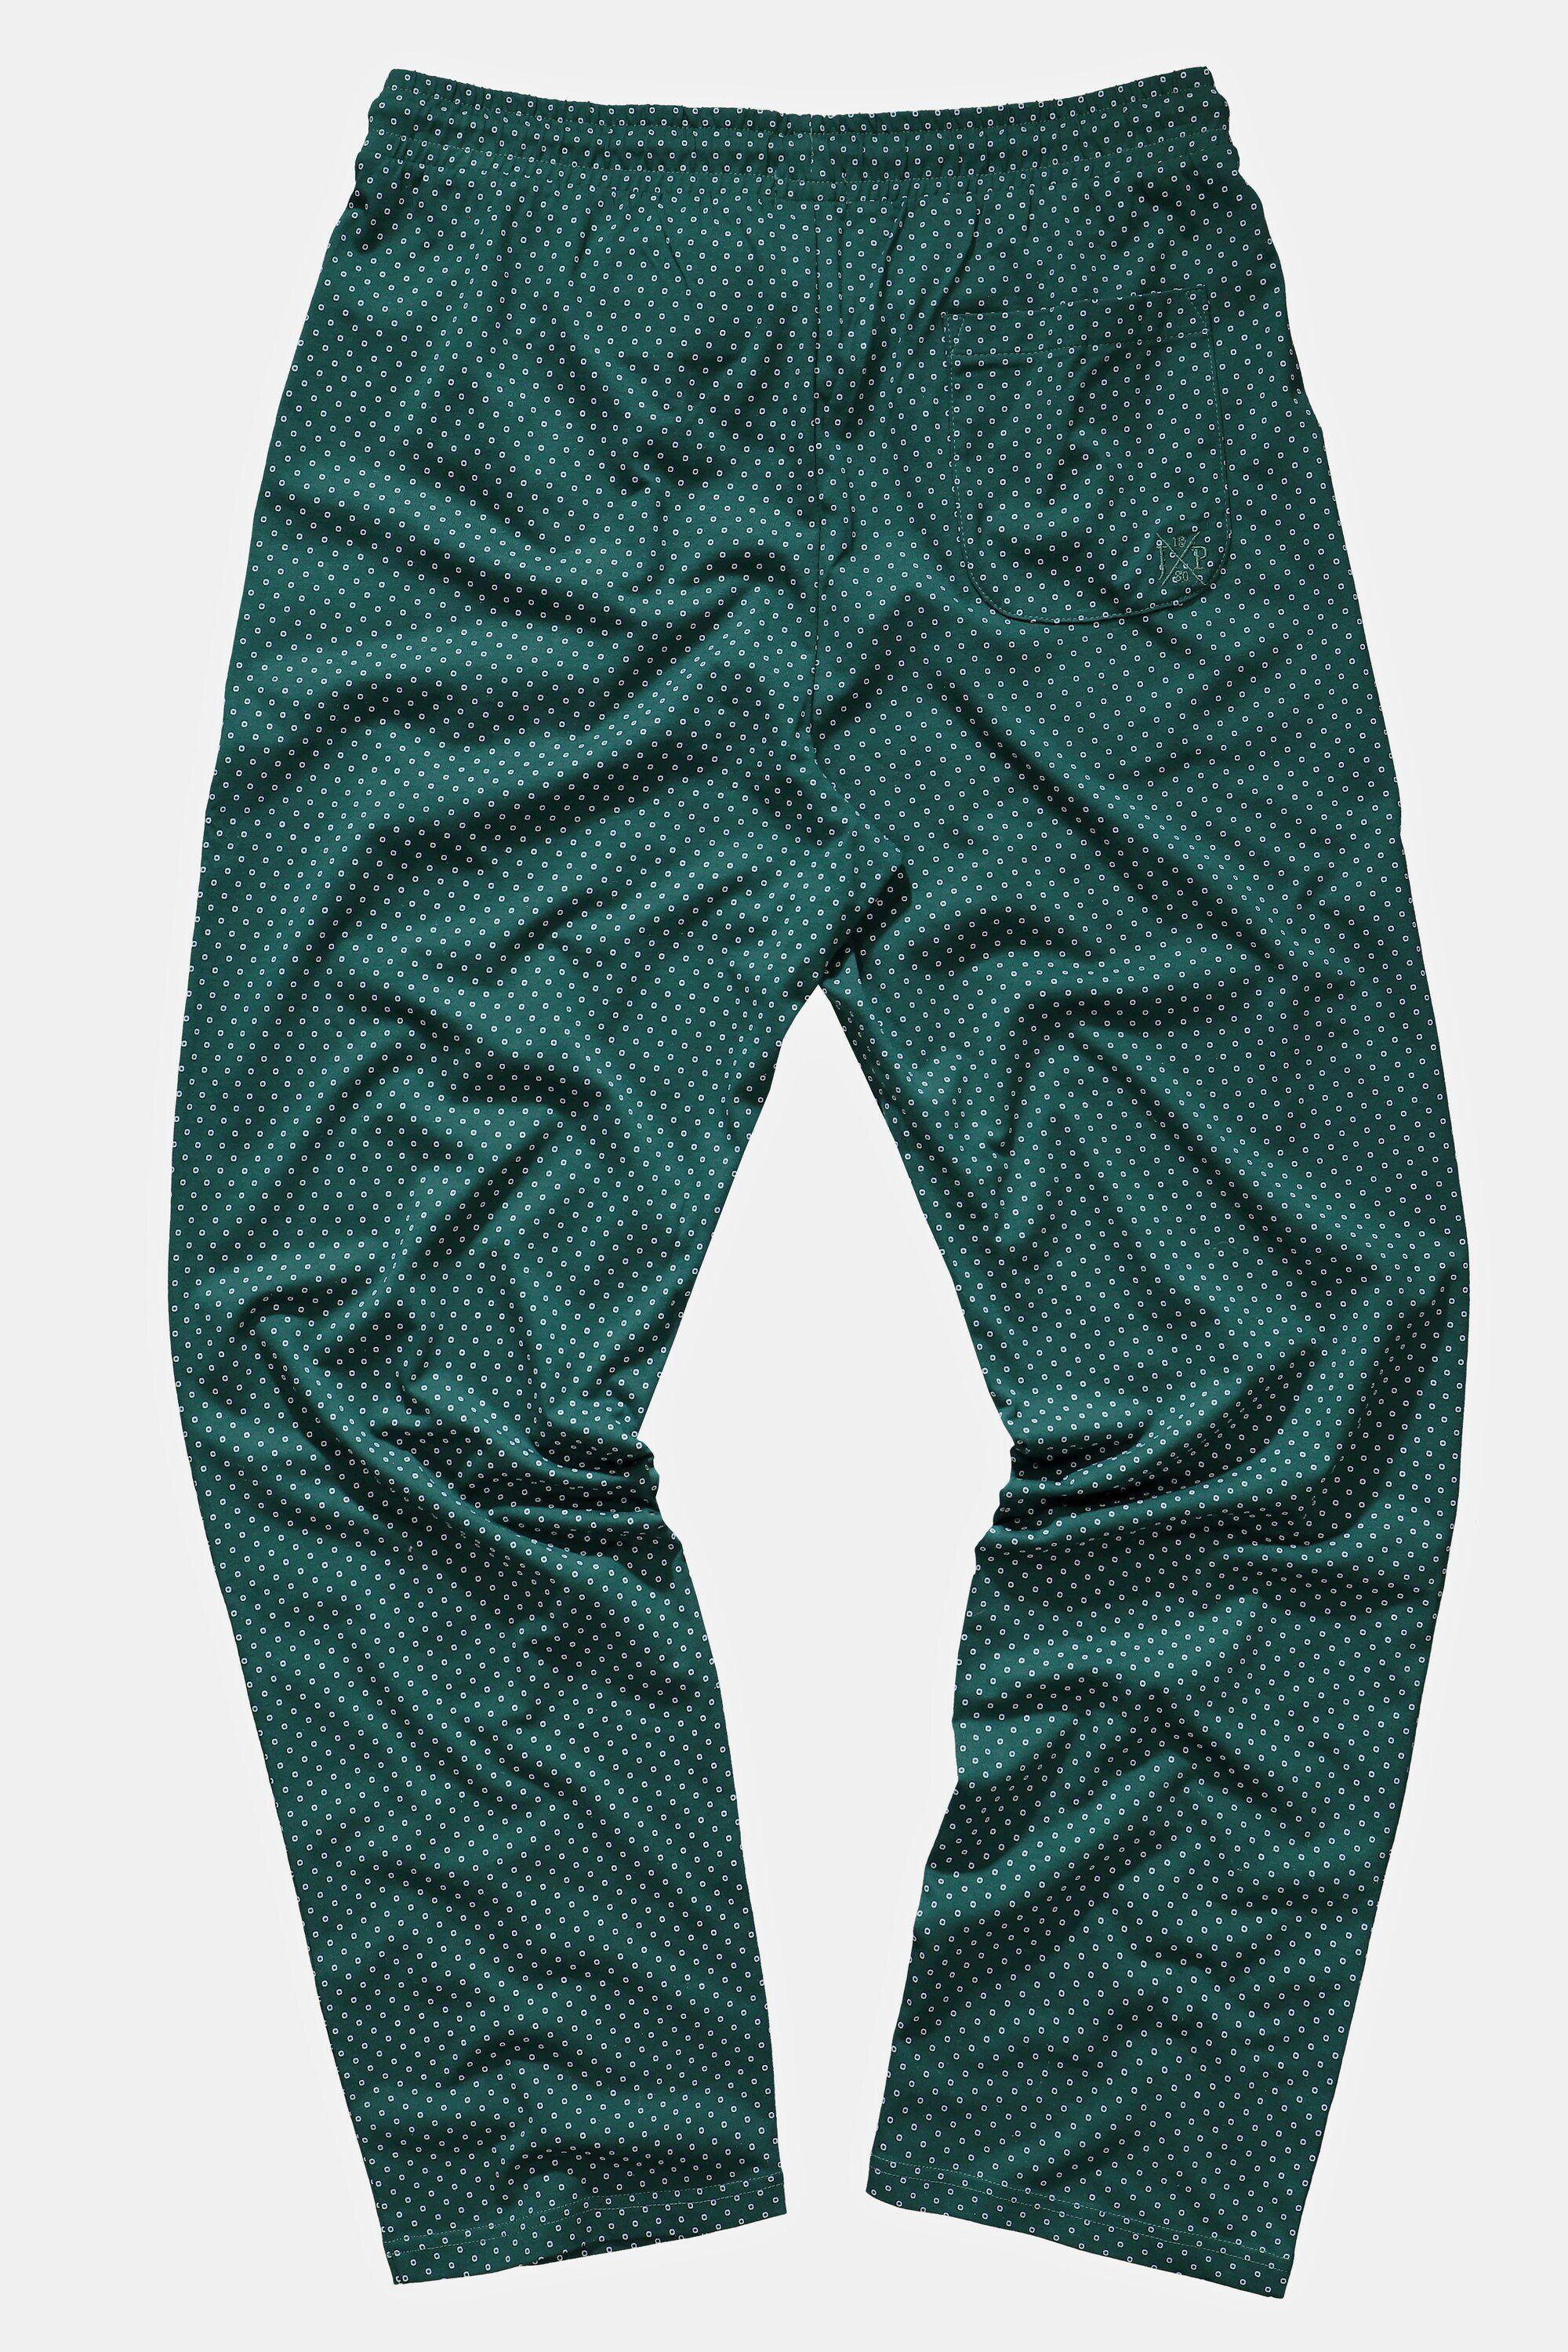 JP1880 Schlafanzug Schlafanzug-Hose Minimal Muster Elastikbund